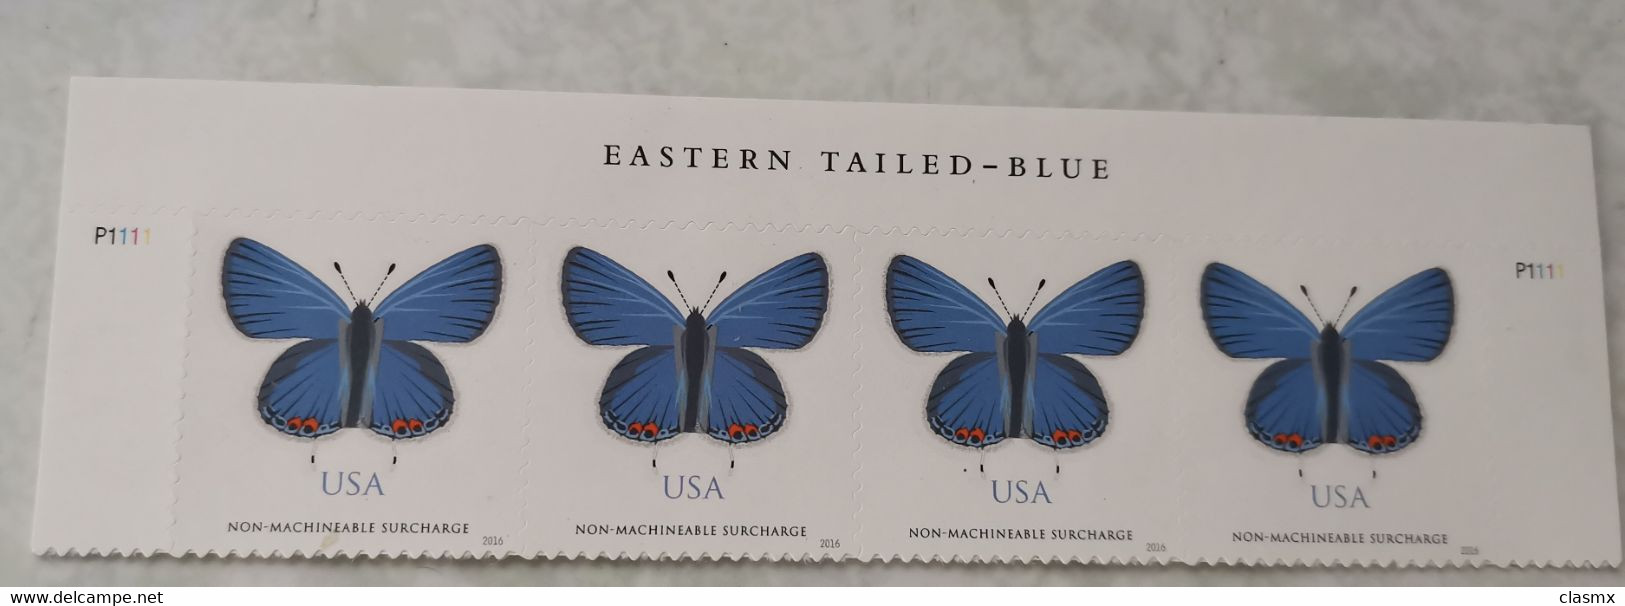 USA Blue Butterflies STAMPS MNH EASTERN TILED BLUE - Ongebruikt